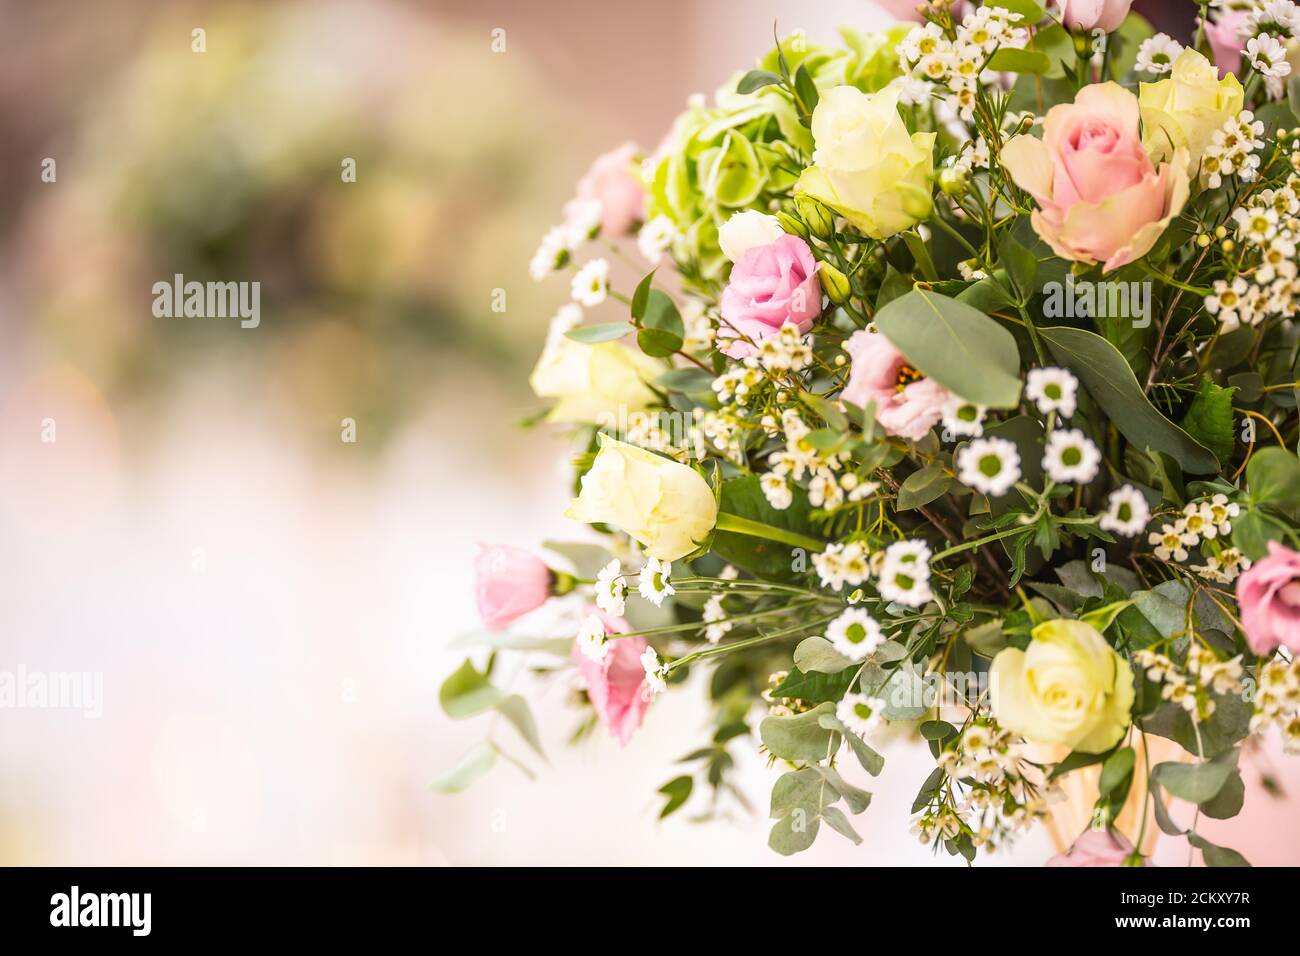 Detail einer Hochzeit Blumenstrauß mit rosa Rosen aufgestellt In der rechten Seite des Bildes Stockfoto